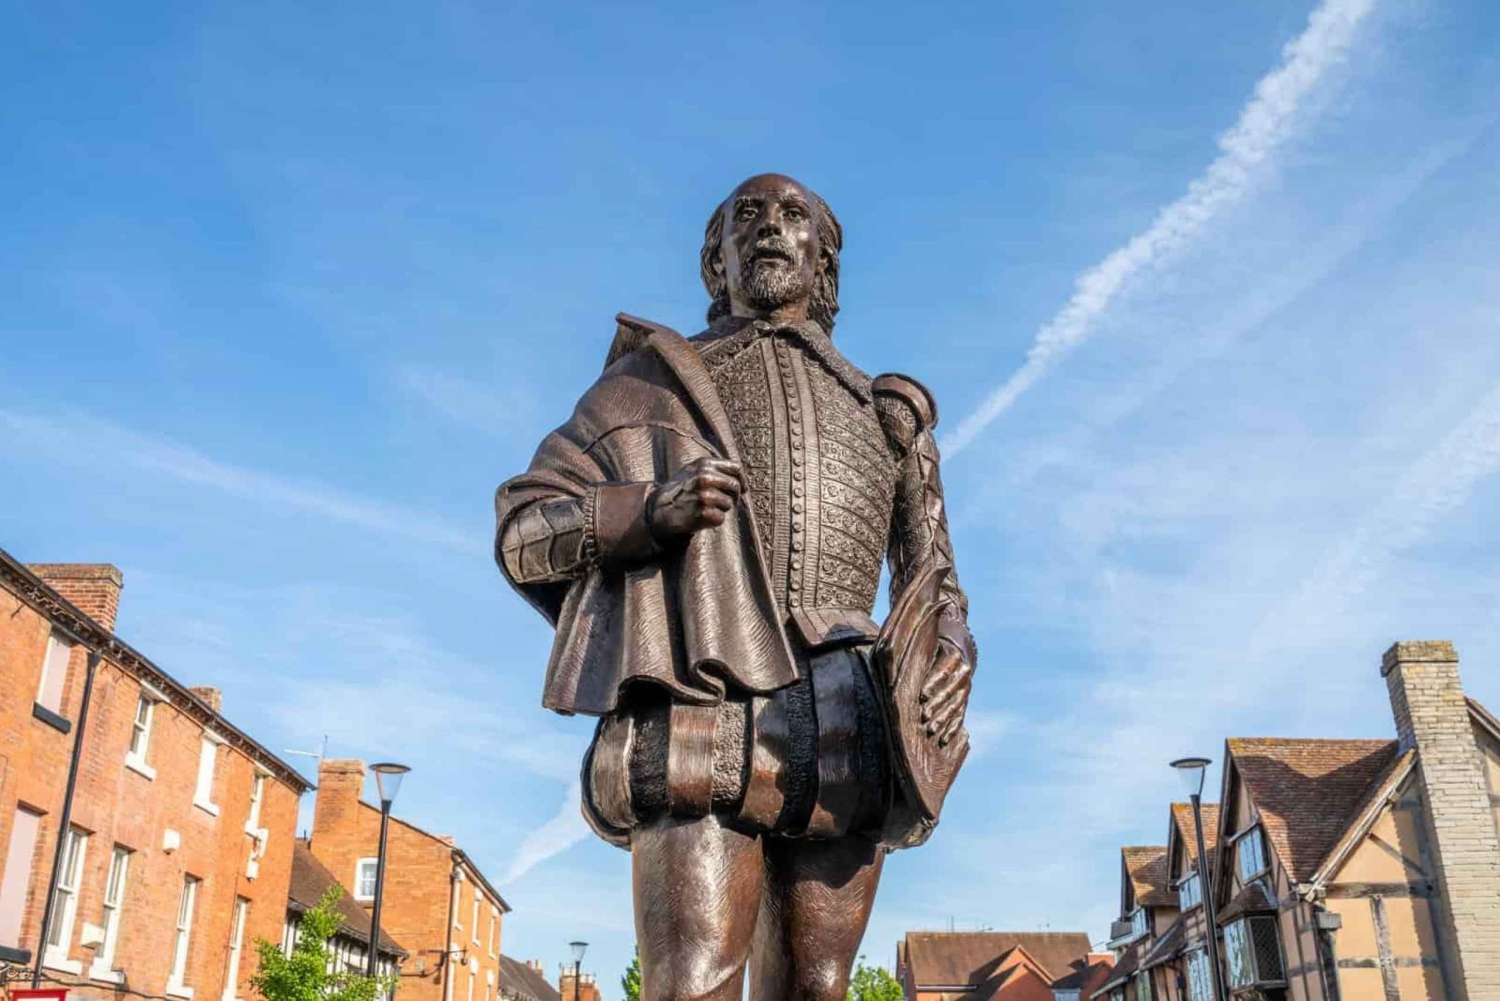 Starford-Upon-Avon : Visite historique du lieu de naissance de Shakespeare